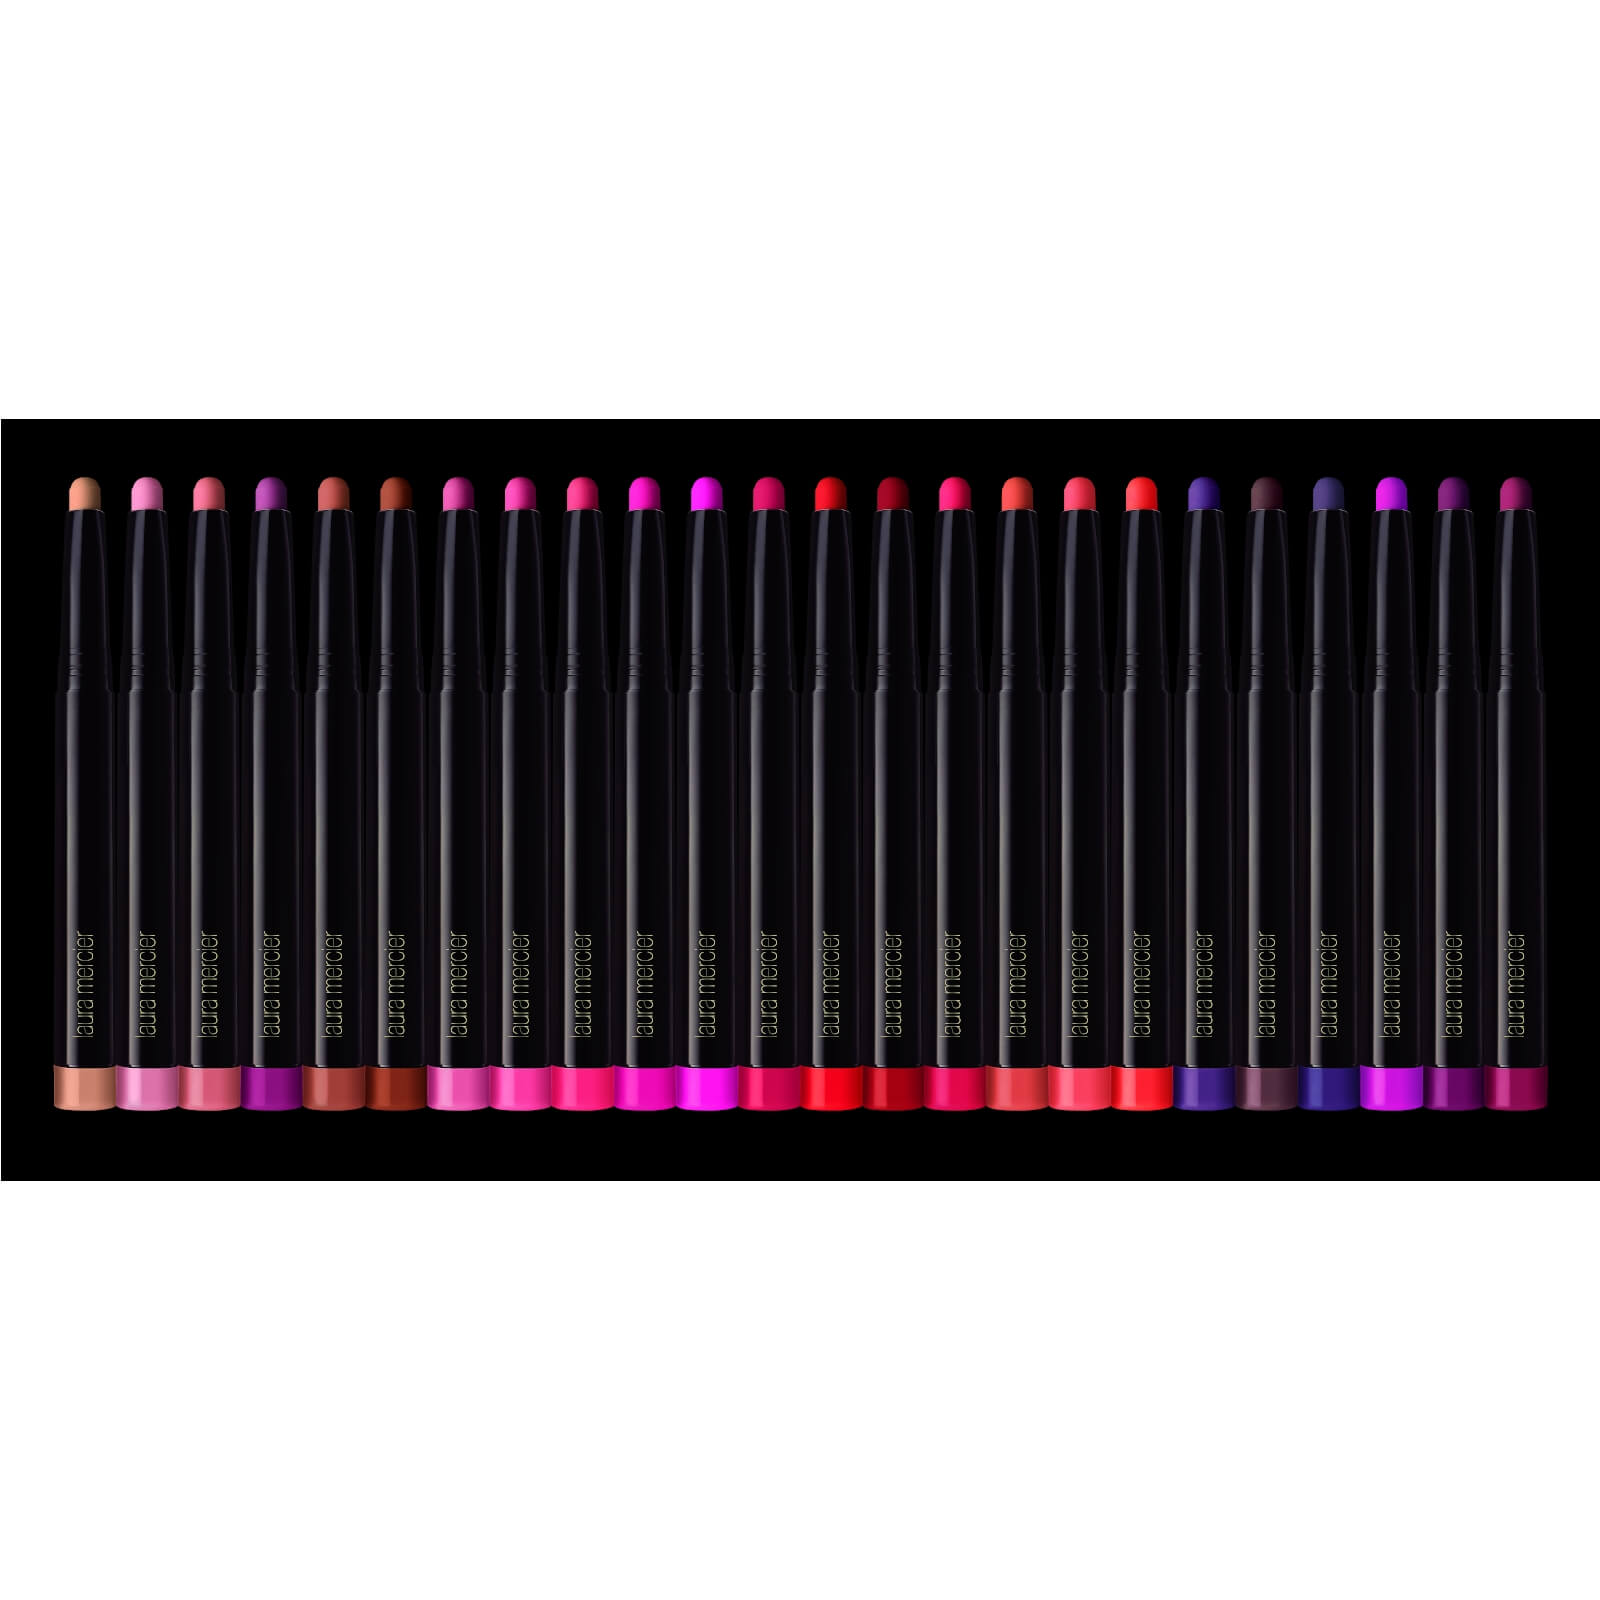 Laura Mercier Velour Extreme Matte Parisian Nudes Lipstick 1.4g (Various Shades) - Jolie